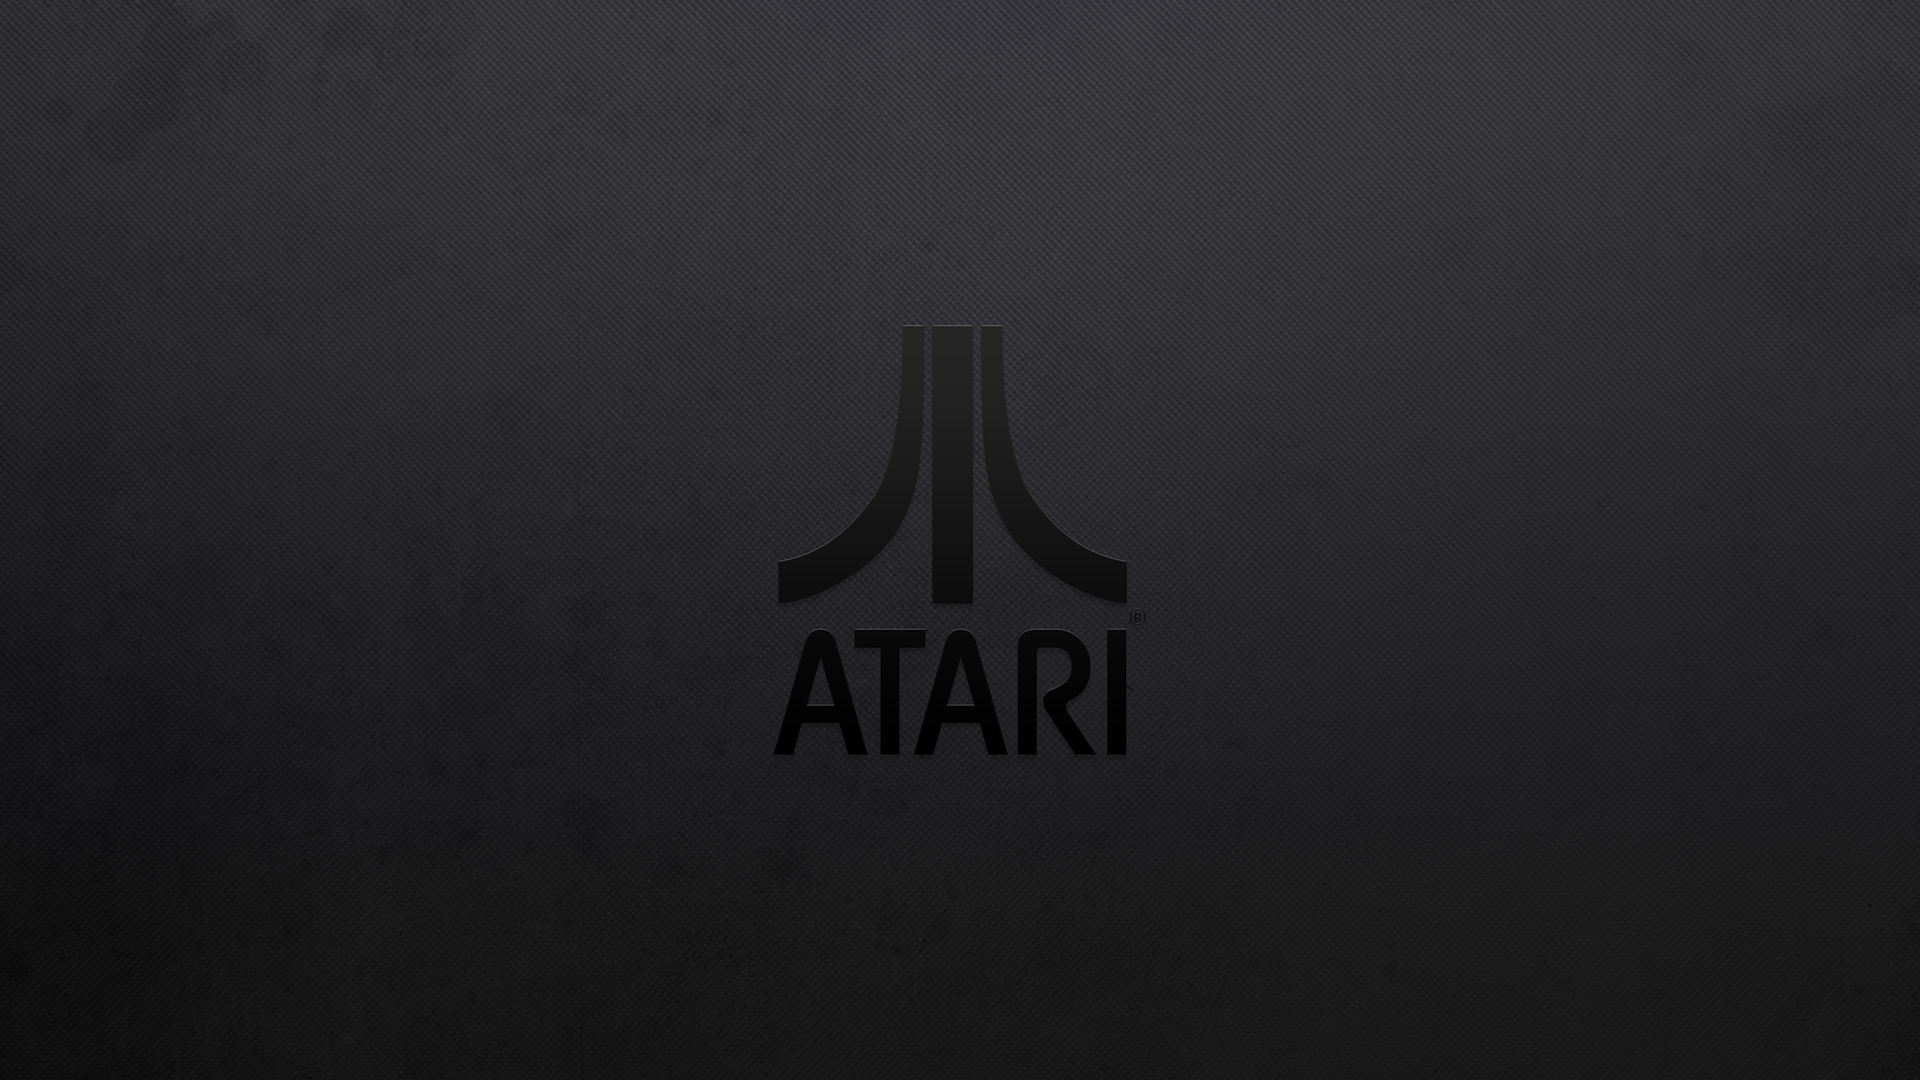 Atari Puter Wallpaper Desktop Background